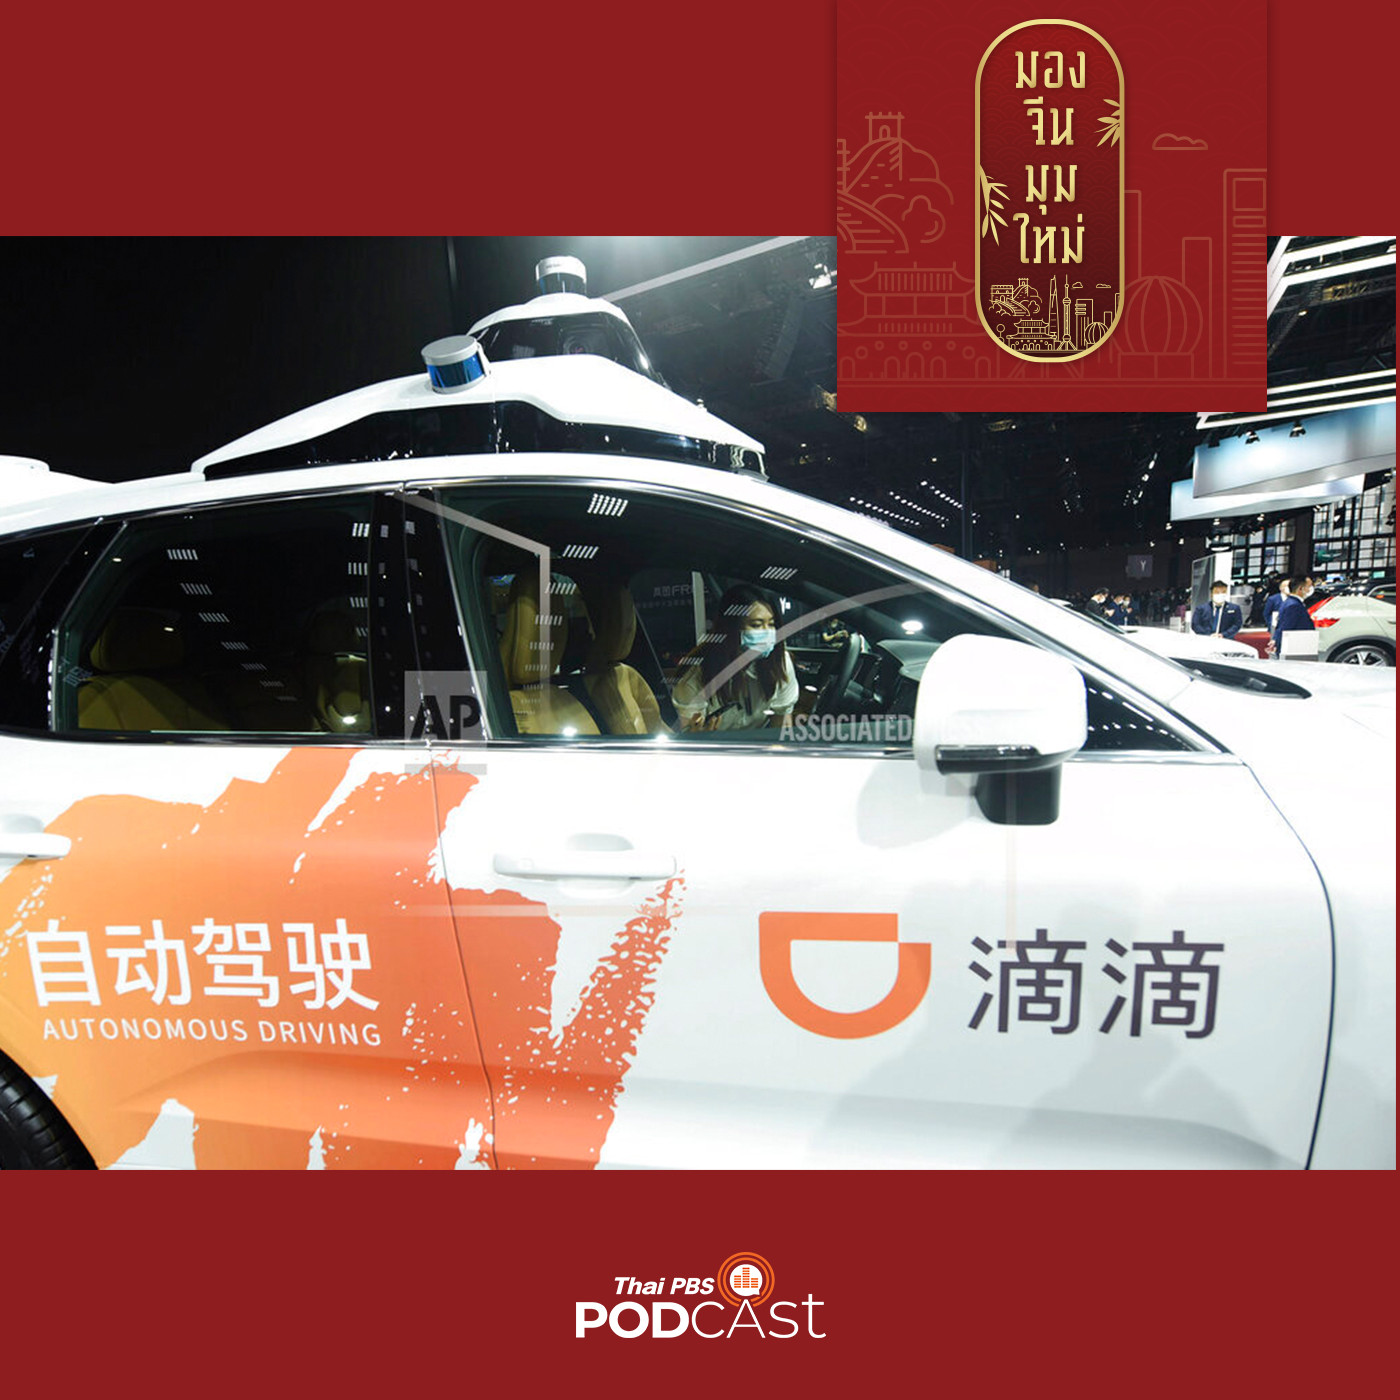 มองจีนมุมใหม่ EP. 101: “รถยนต์ไร้คนขับ” เกมรุกของจีนสู่ชาติผู้นำอุตสาหกรรม